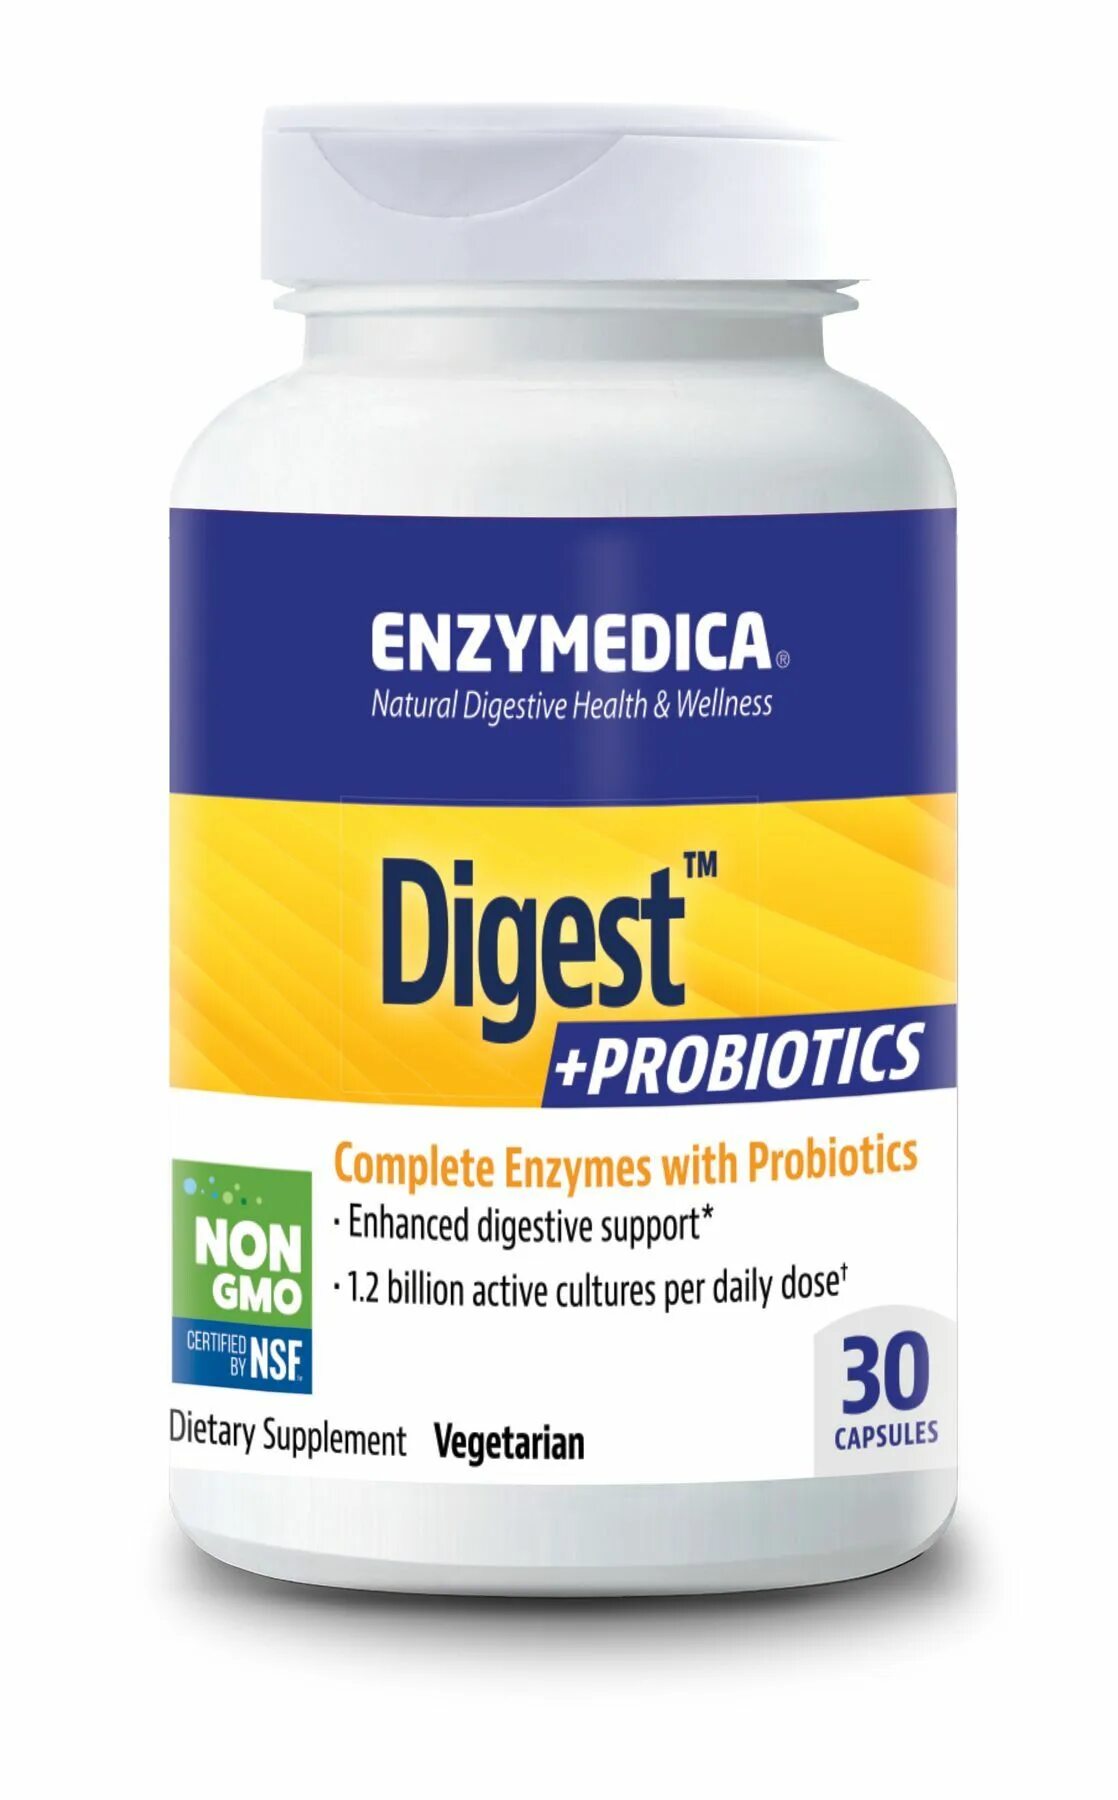 Enzymedica Digest 90 капсул. Дигест Базик пробиотик. Enzymedica Digest 180 капсул. Enzymedica-Digest-probiotics-90-Capsules.